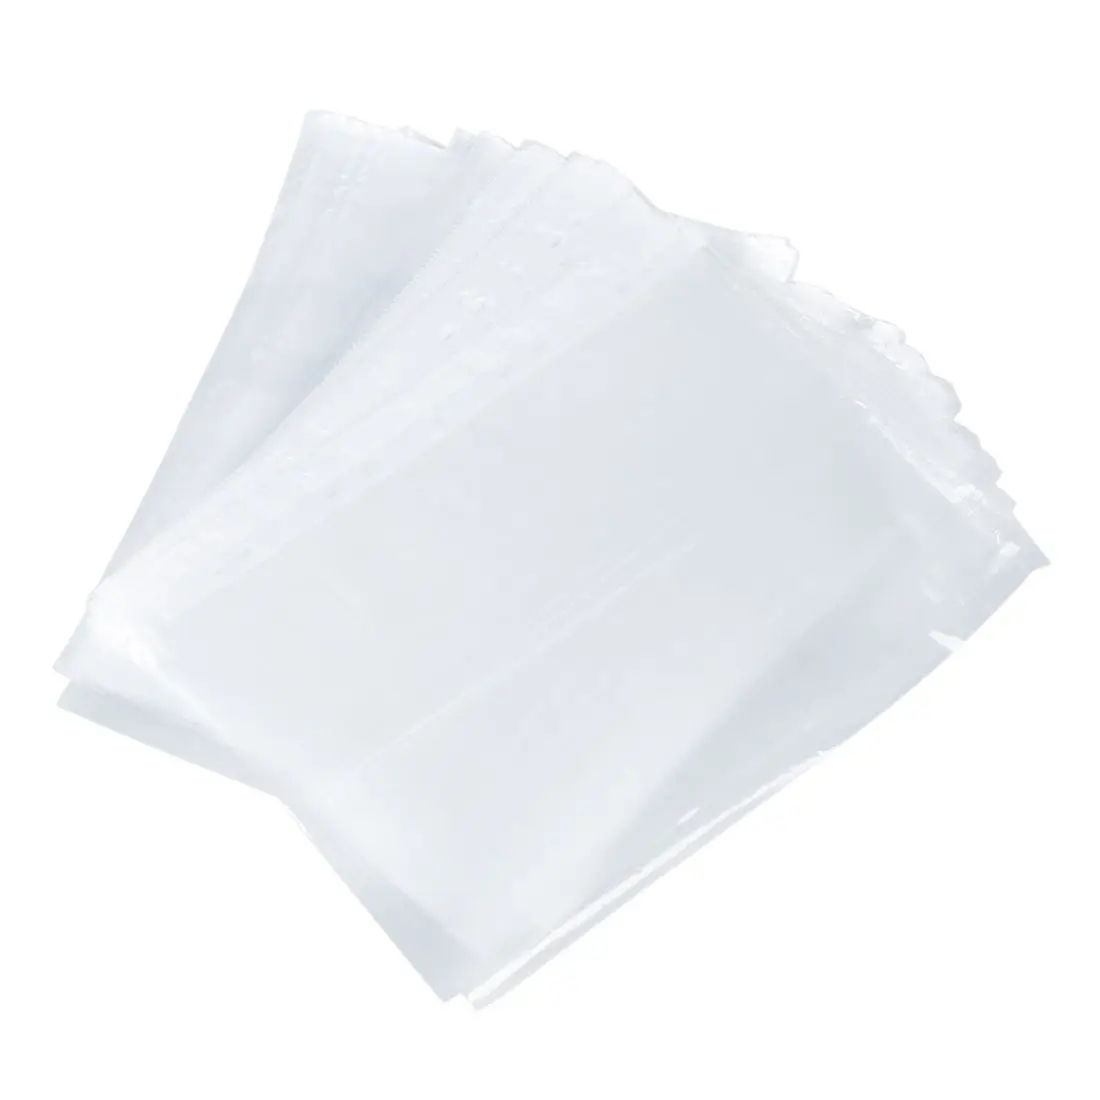 PPYY NEW -Office School A4 бумага для документов лист протектор прозрачный белый 100 шт |